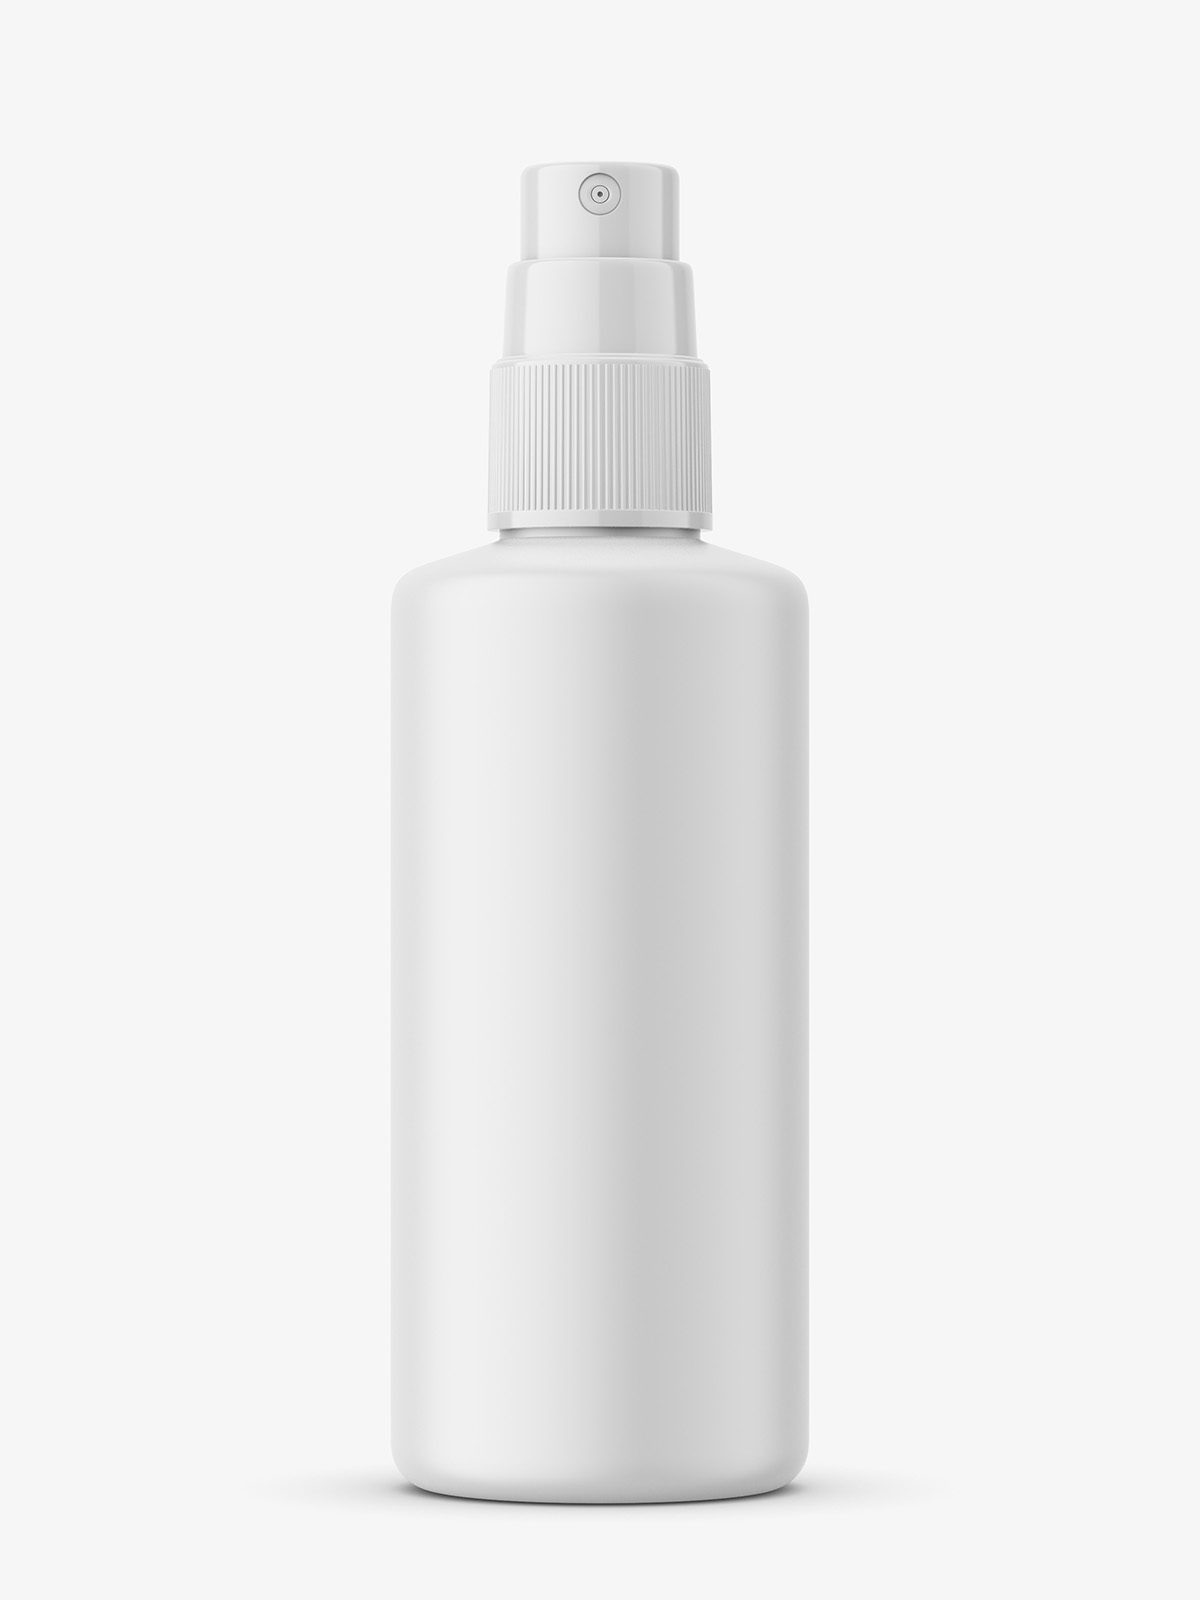 Download Mist Spray Bottle Mockup 100 Ml Smarty Mockups PSD Mockup Templates